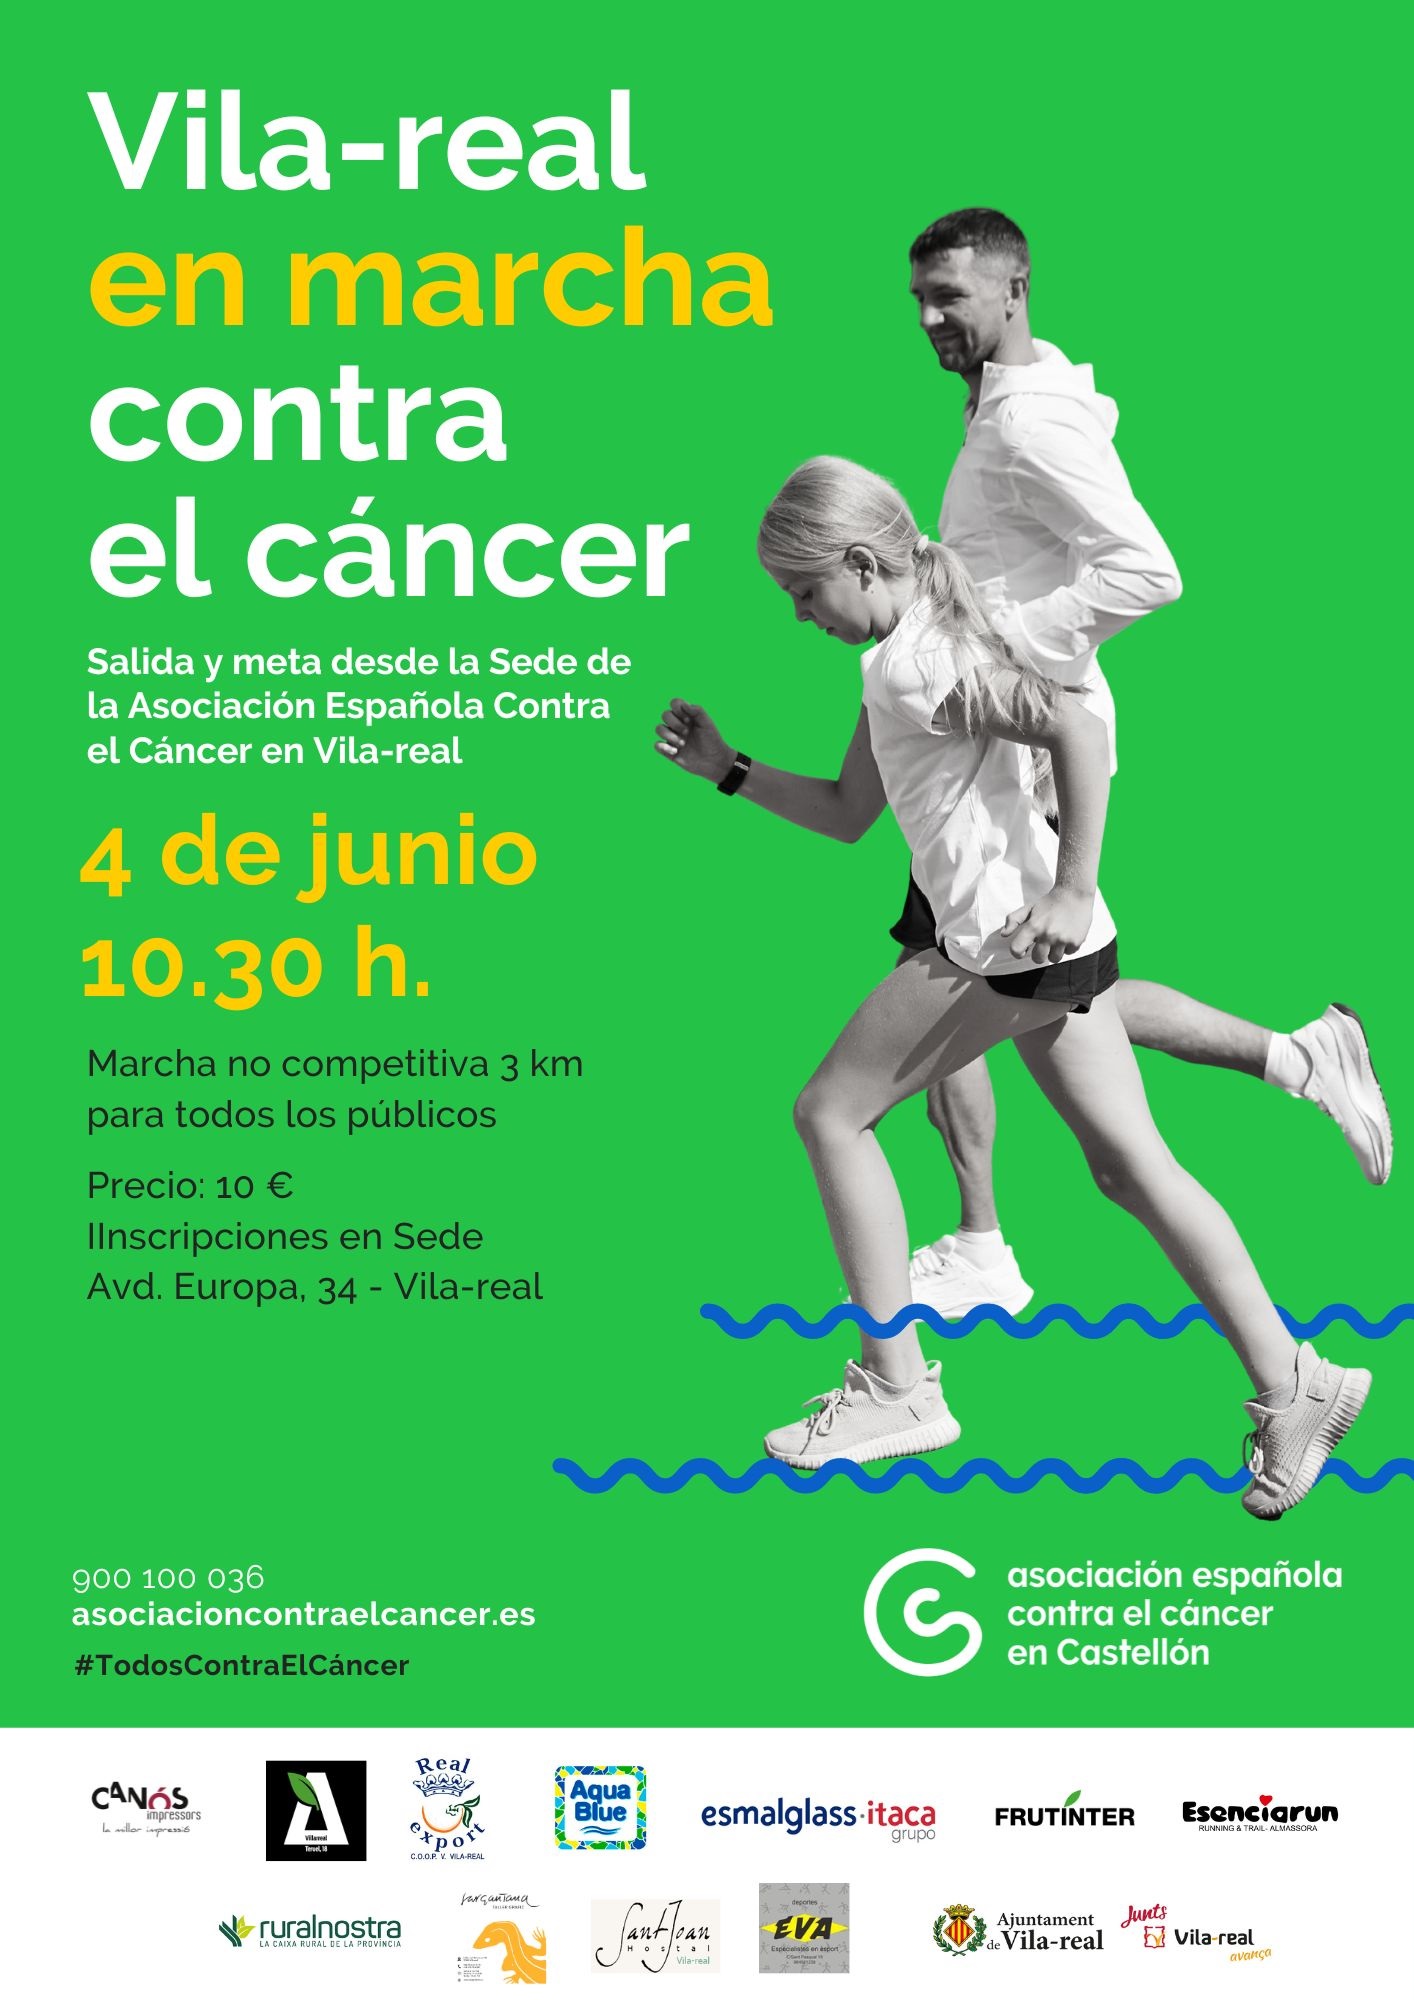 L’Associació Espanyola Contra el Càncer a Vila-real realitzarà diumenge 4 de juny una marxa solidària, ens ho explica, Rosa Museros